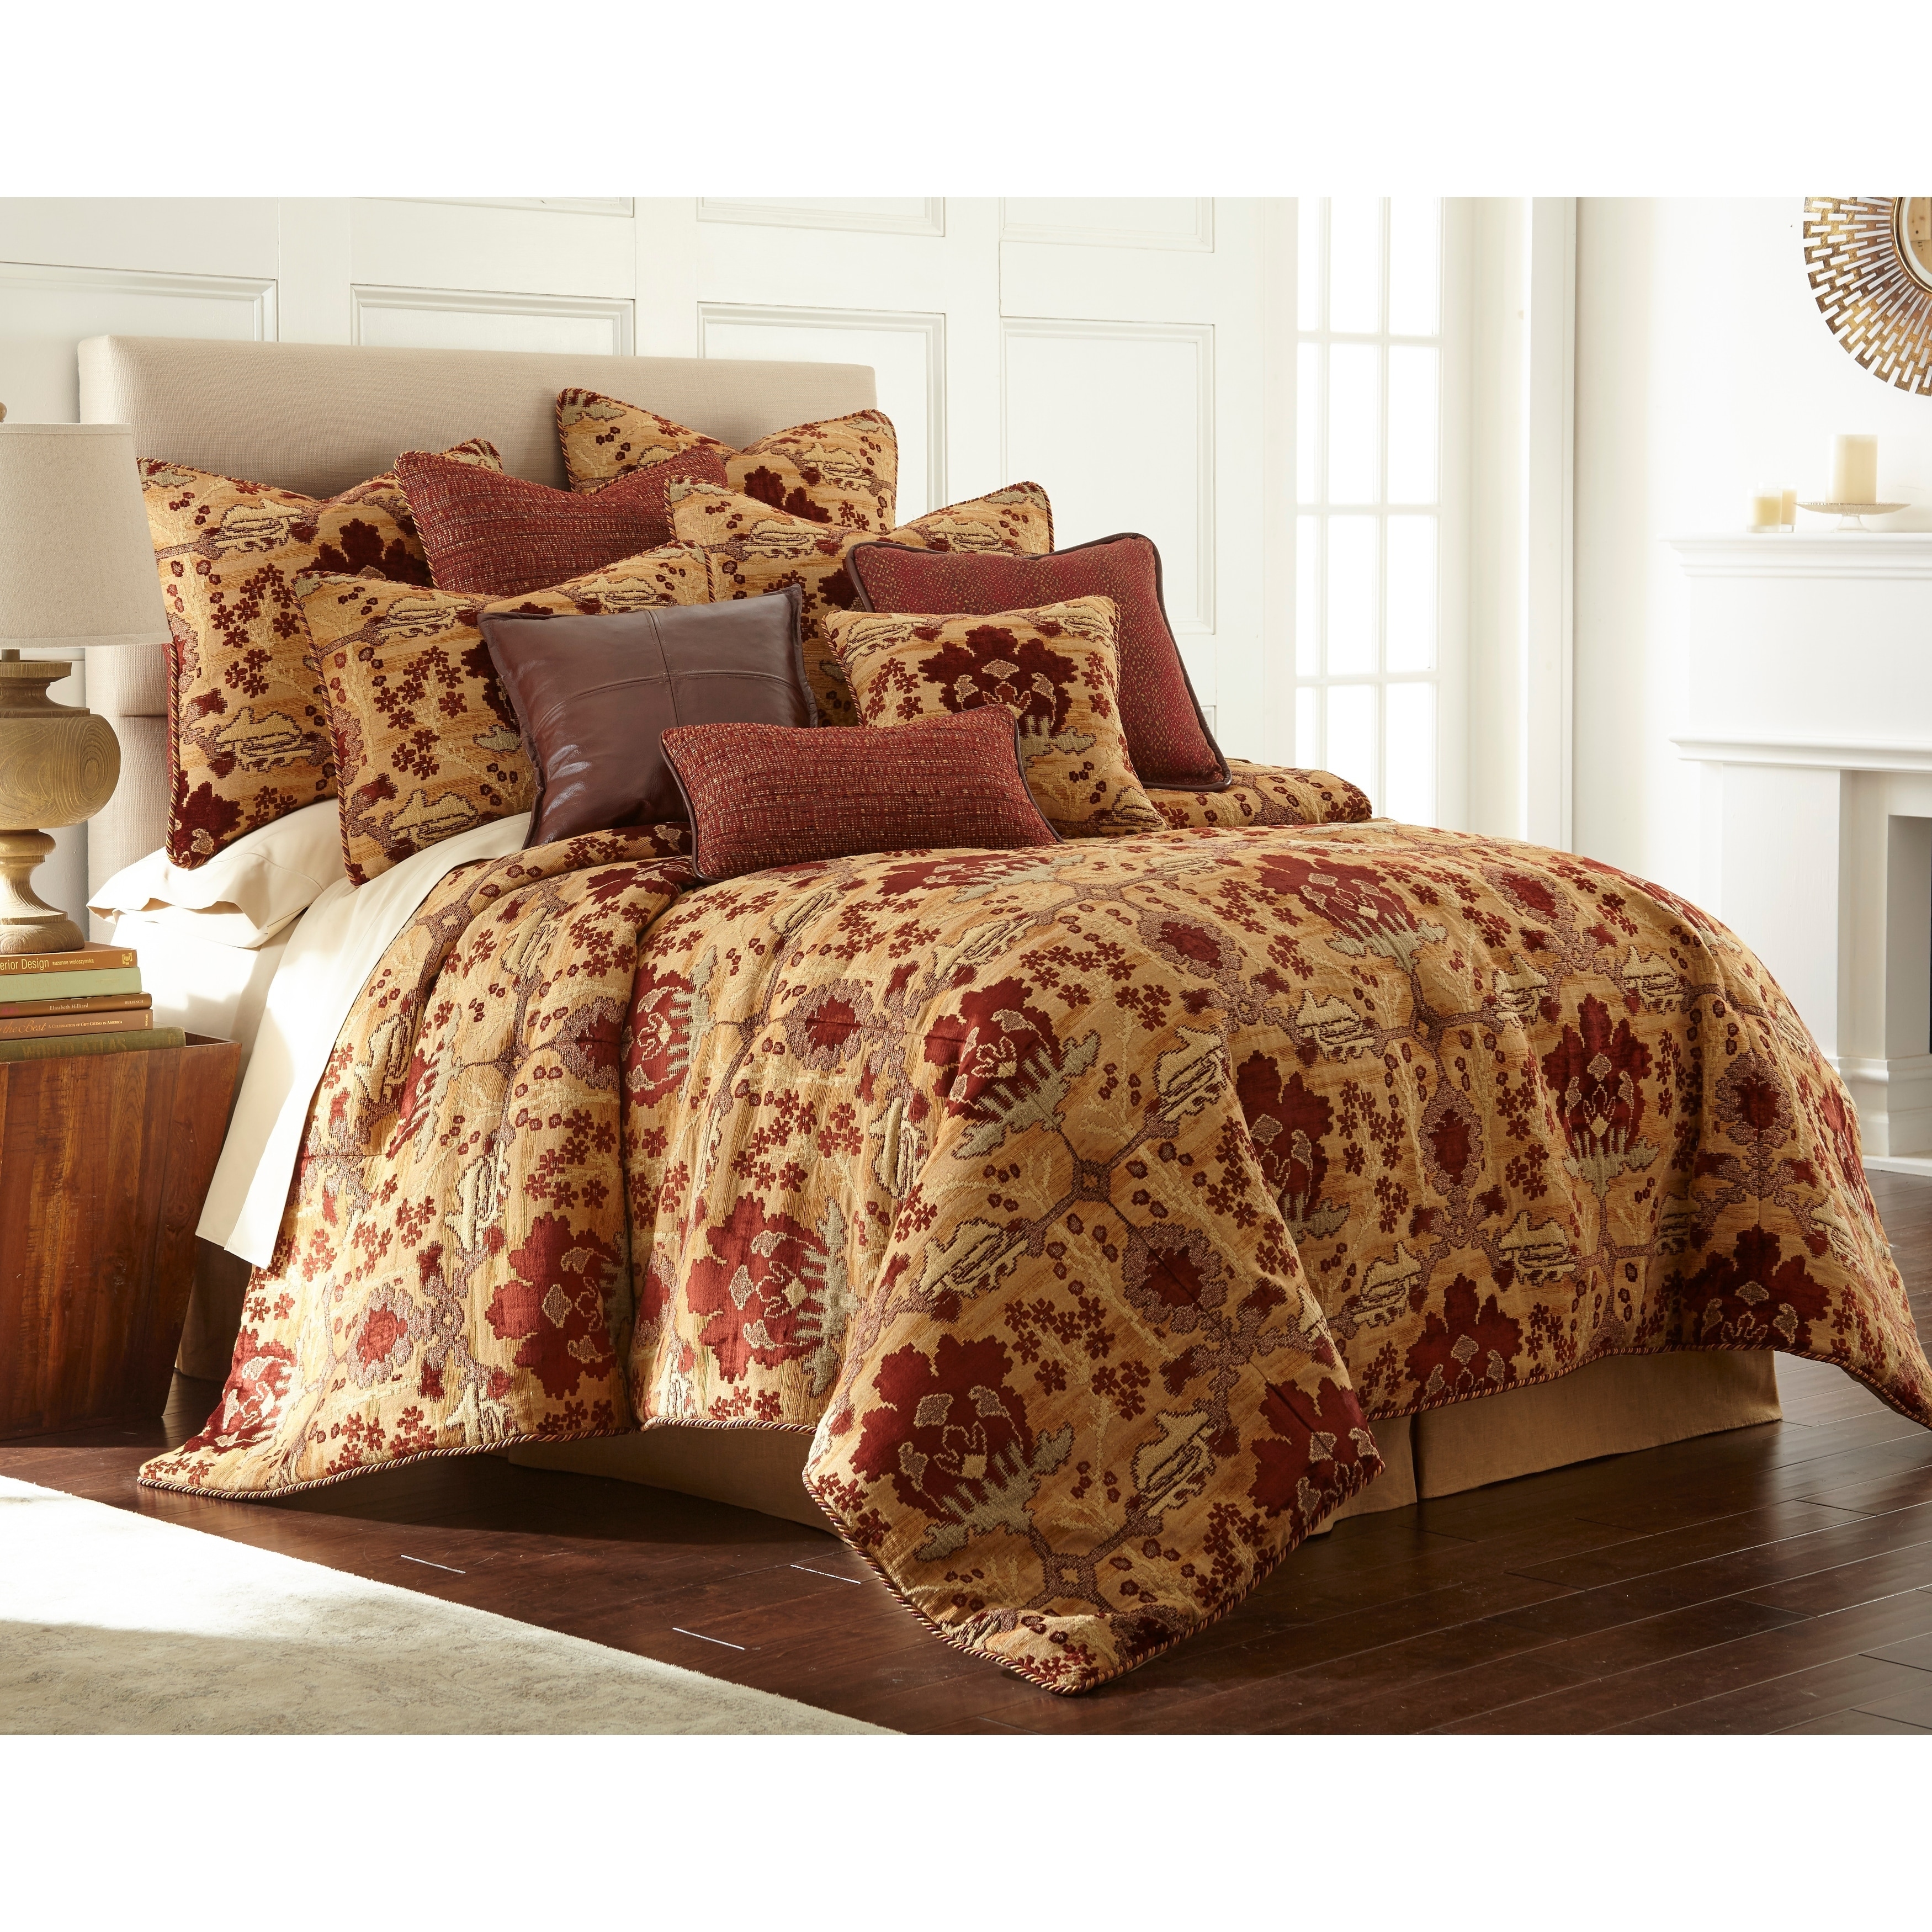 luxury comforter sets queen